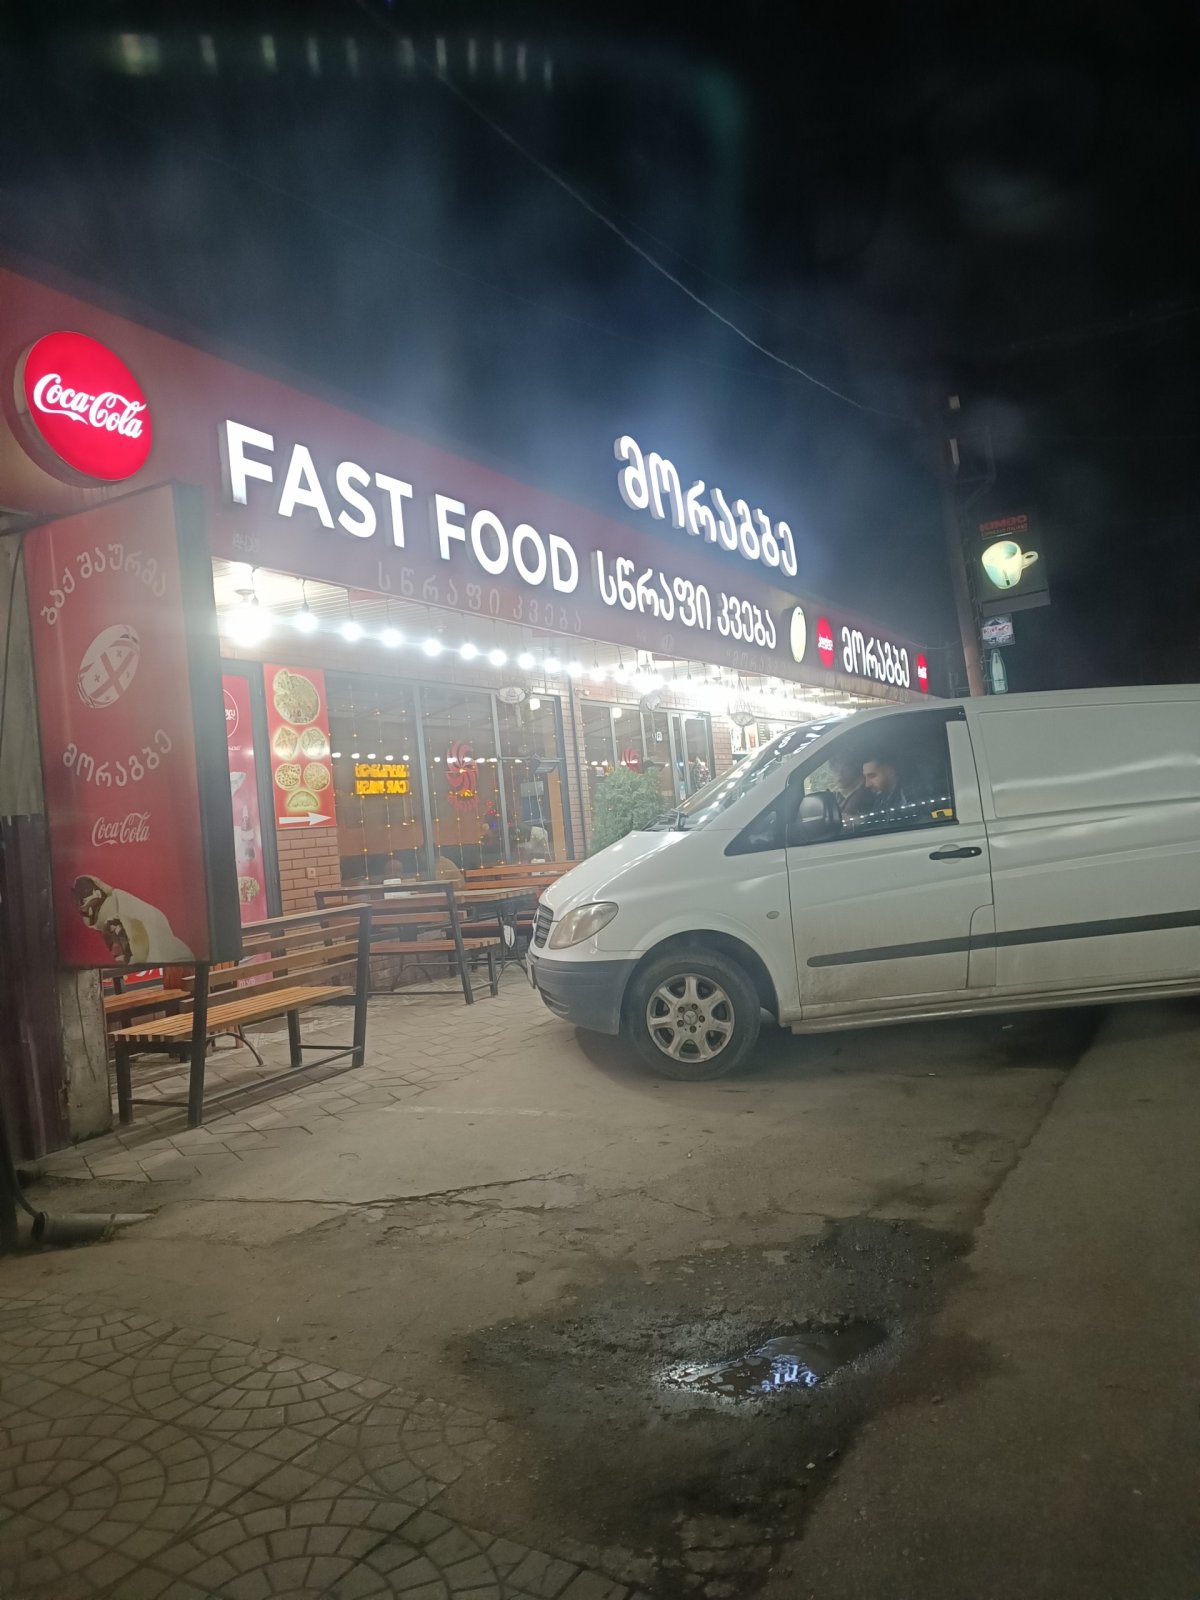 V noci funguje mnoho fast foodů u cesty, u jednoho stavíme